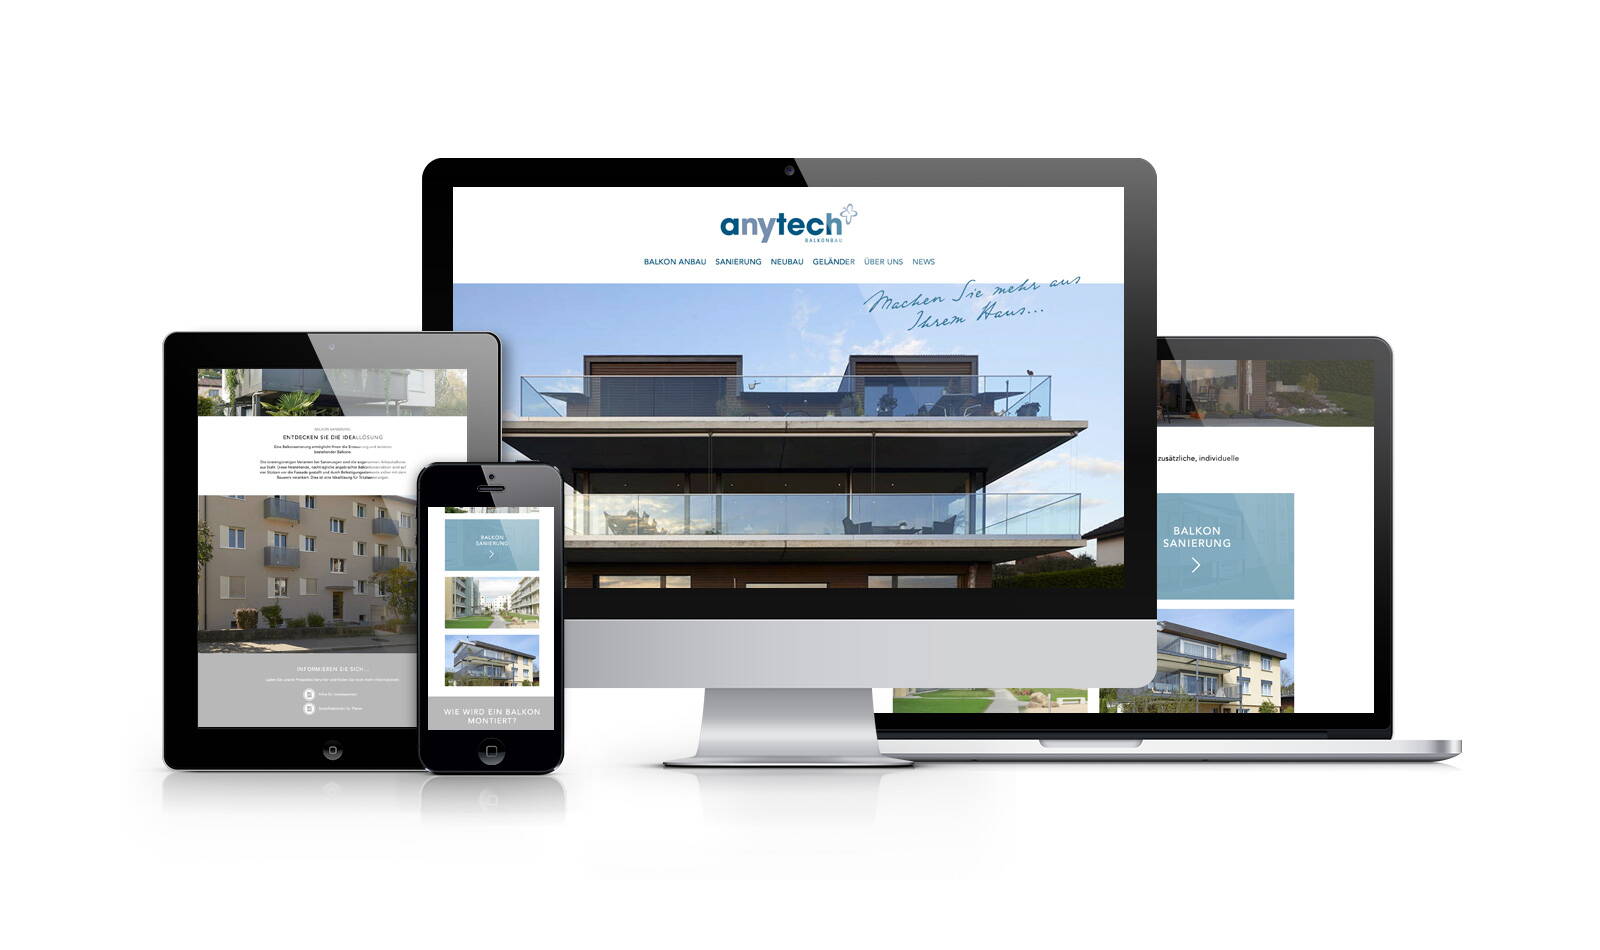 Anytech Balkonbau Webseite, Für schöne Aussichten